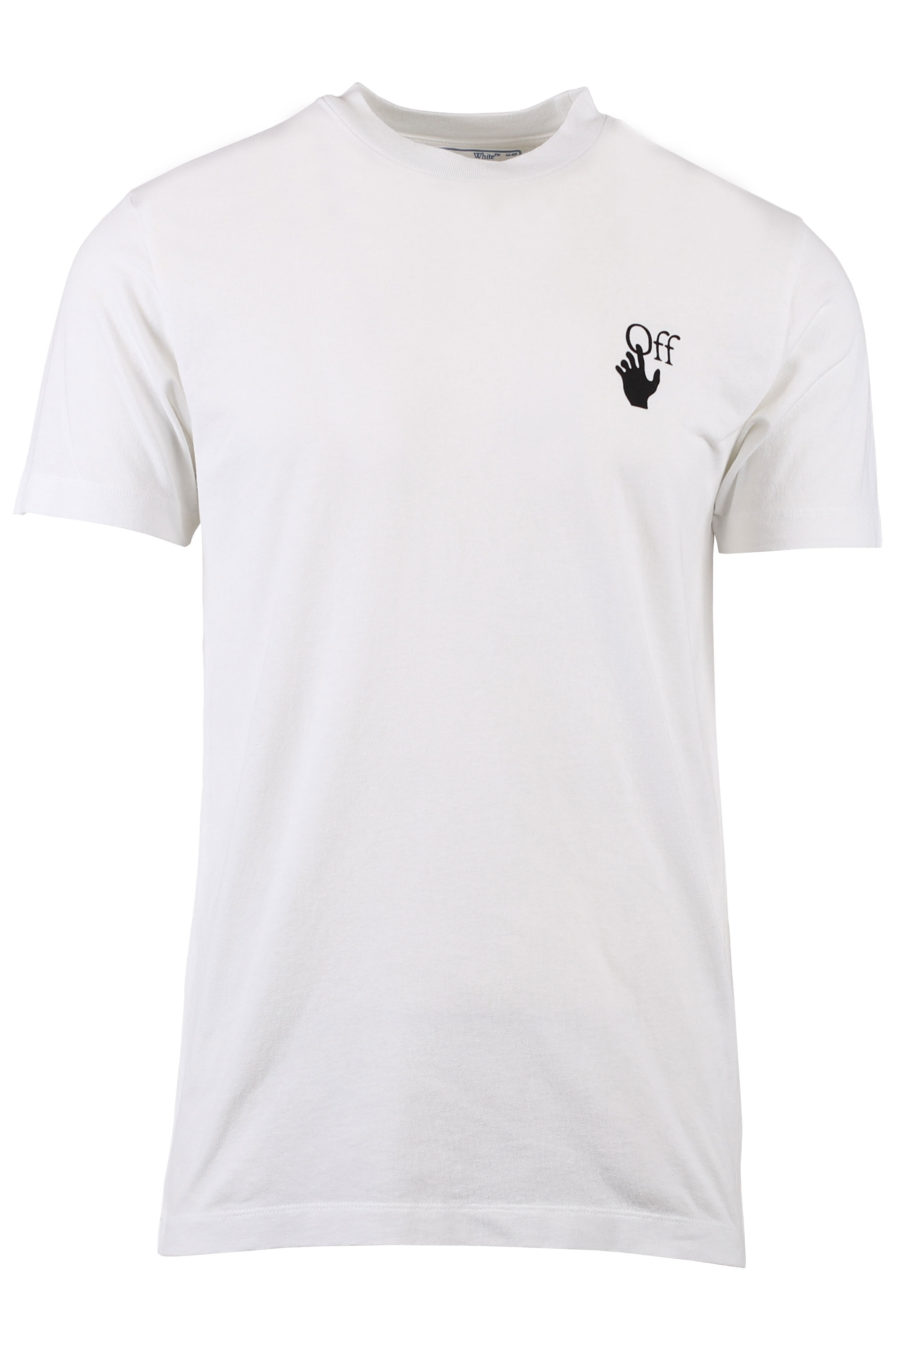 Camiseta blanca con flechas negras en degradé - IMG 1361 m